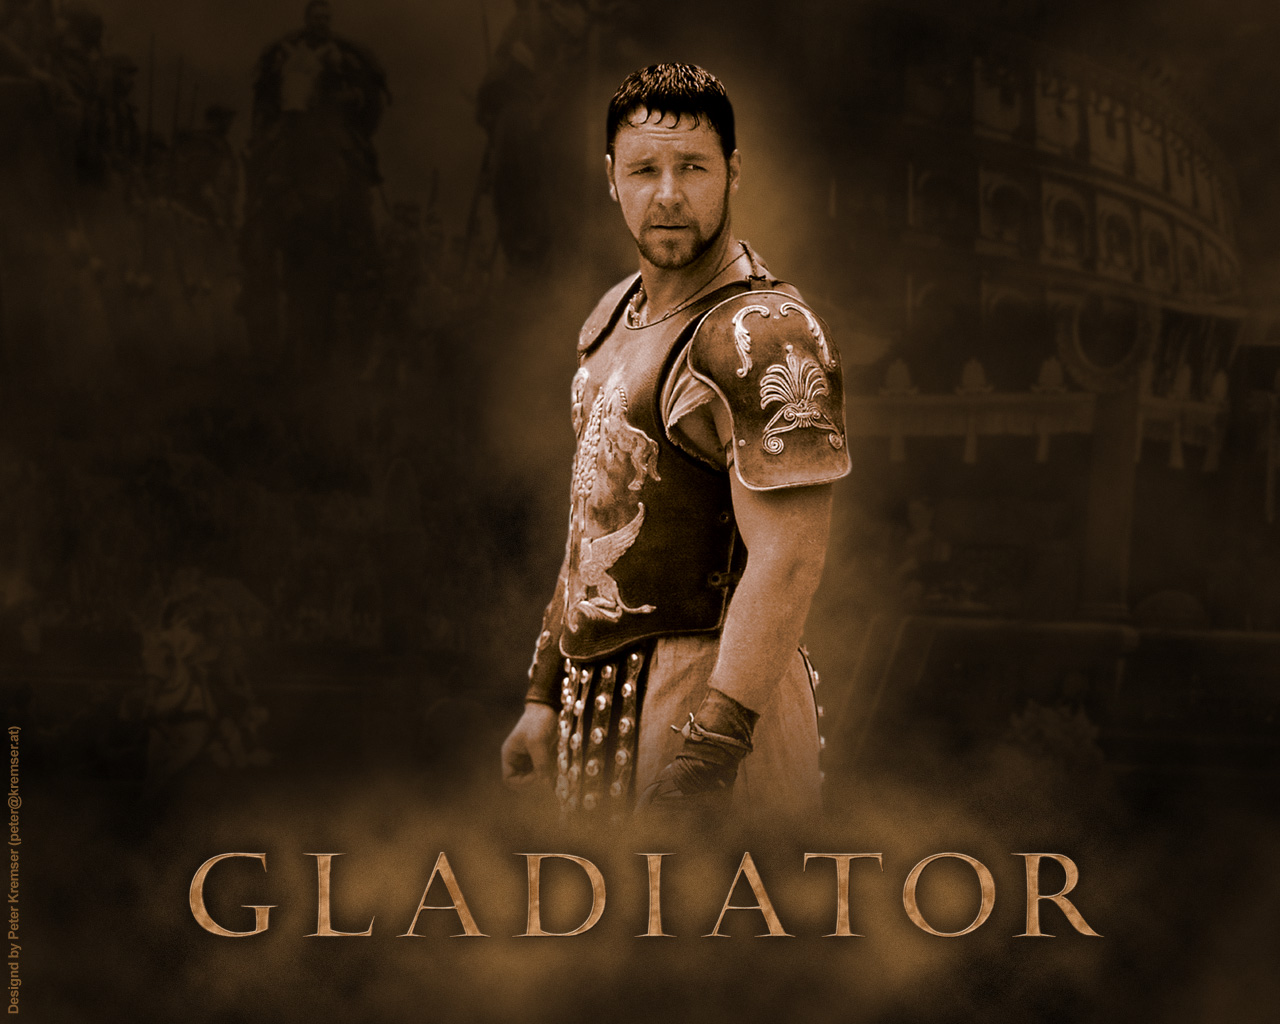 http://1.bp.blogspot.com/_lCd2BFSRTHI/THuLG7uA6nI/AAAAAAAAAGg/702Yl96Aqf8/s1600/115206-maximus_gladiator.jpg